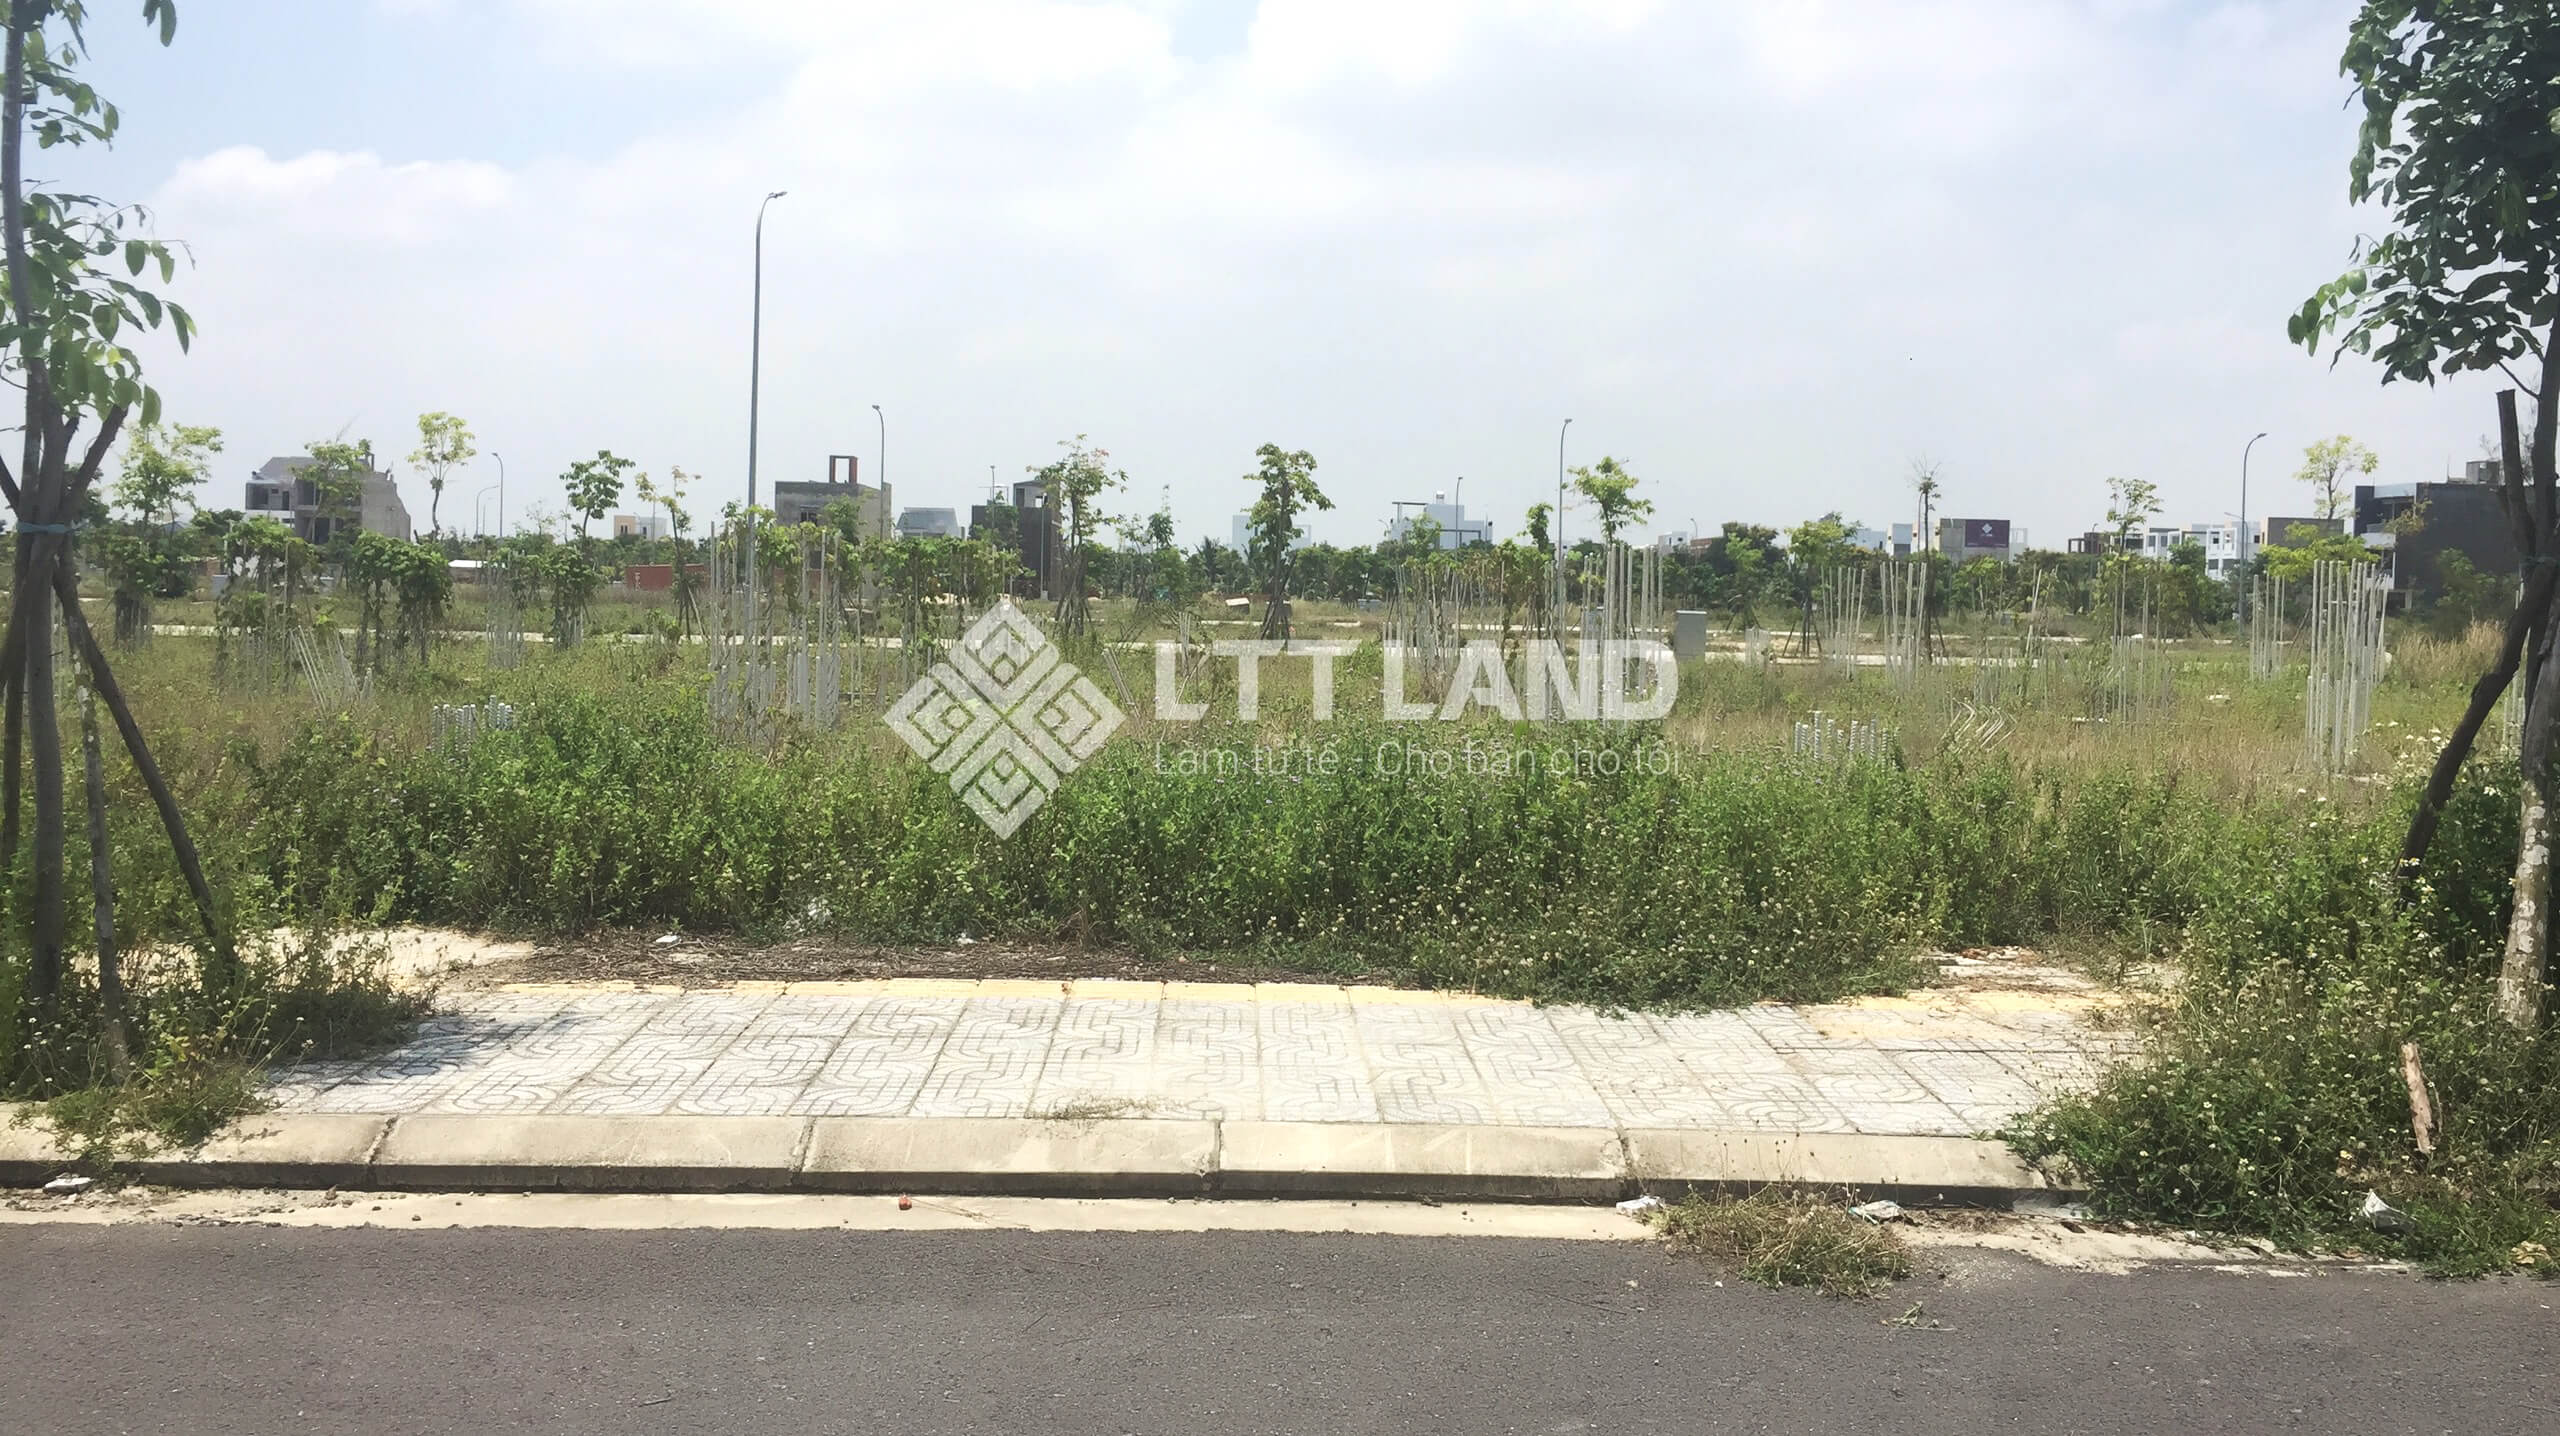 Cơ hội sở hữu lô đất 90m2 tại đô thị FPT Đà Nẵng